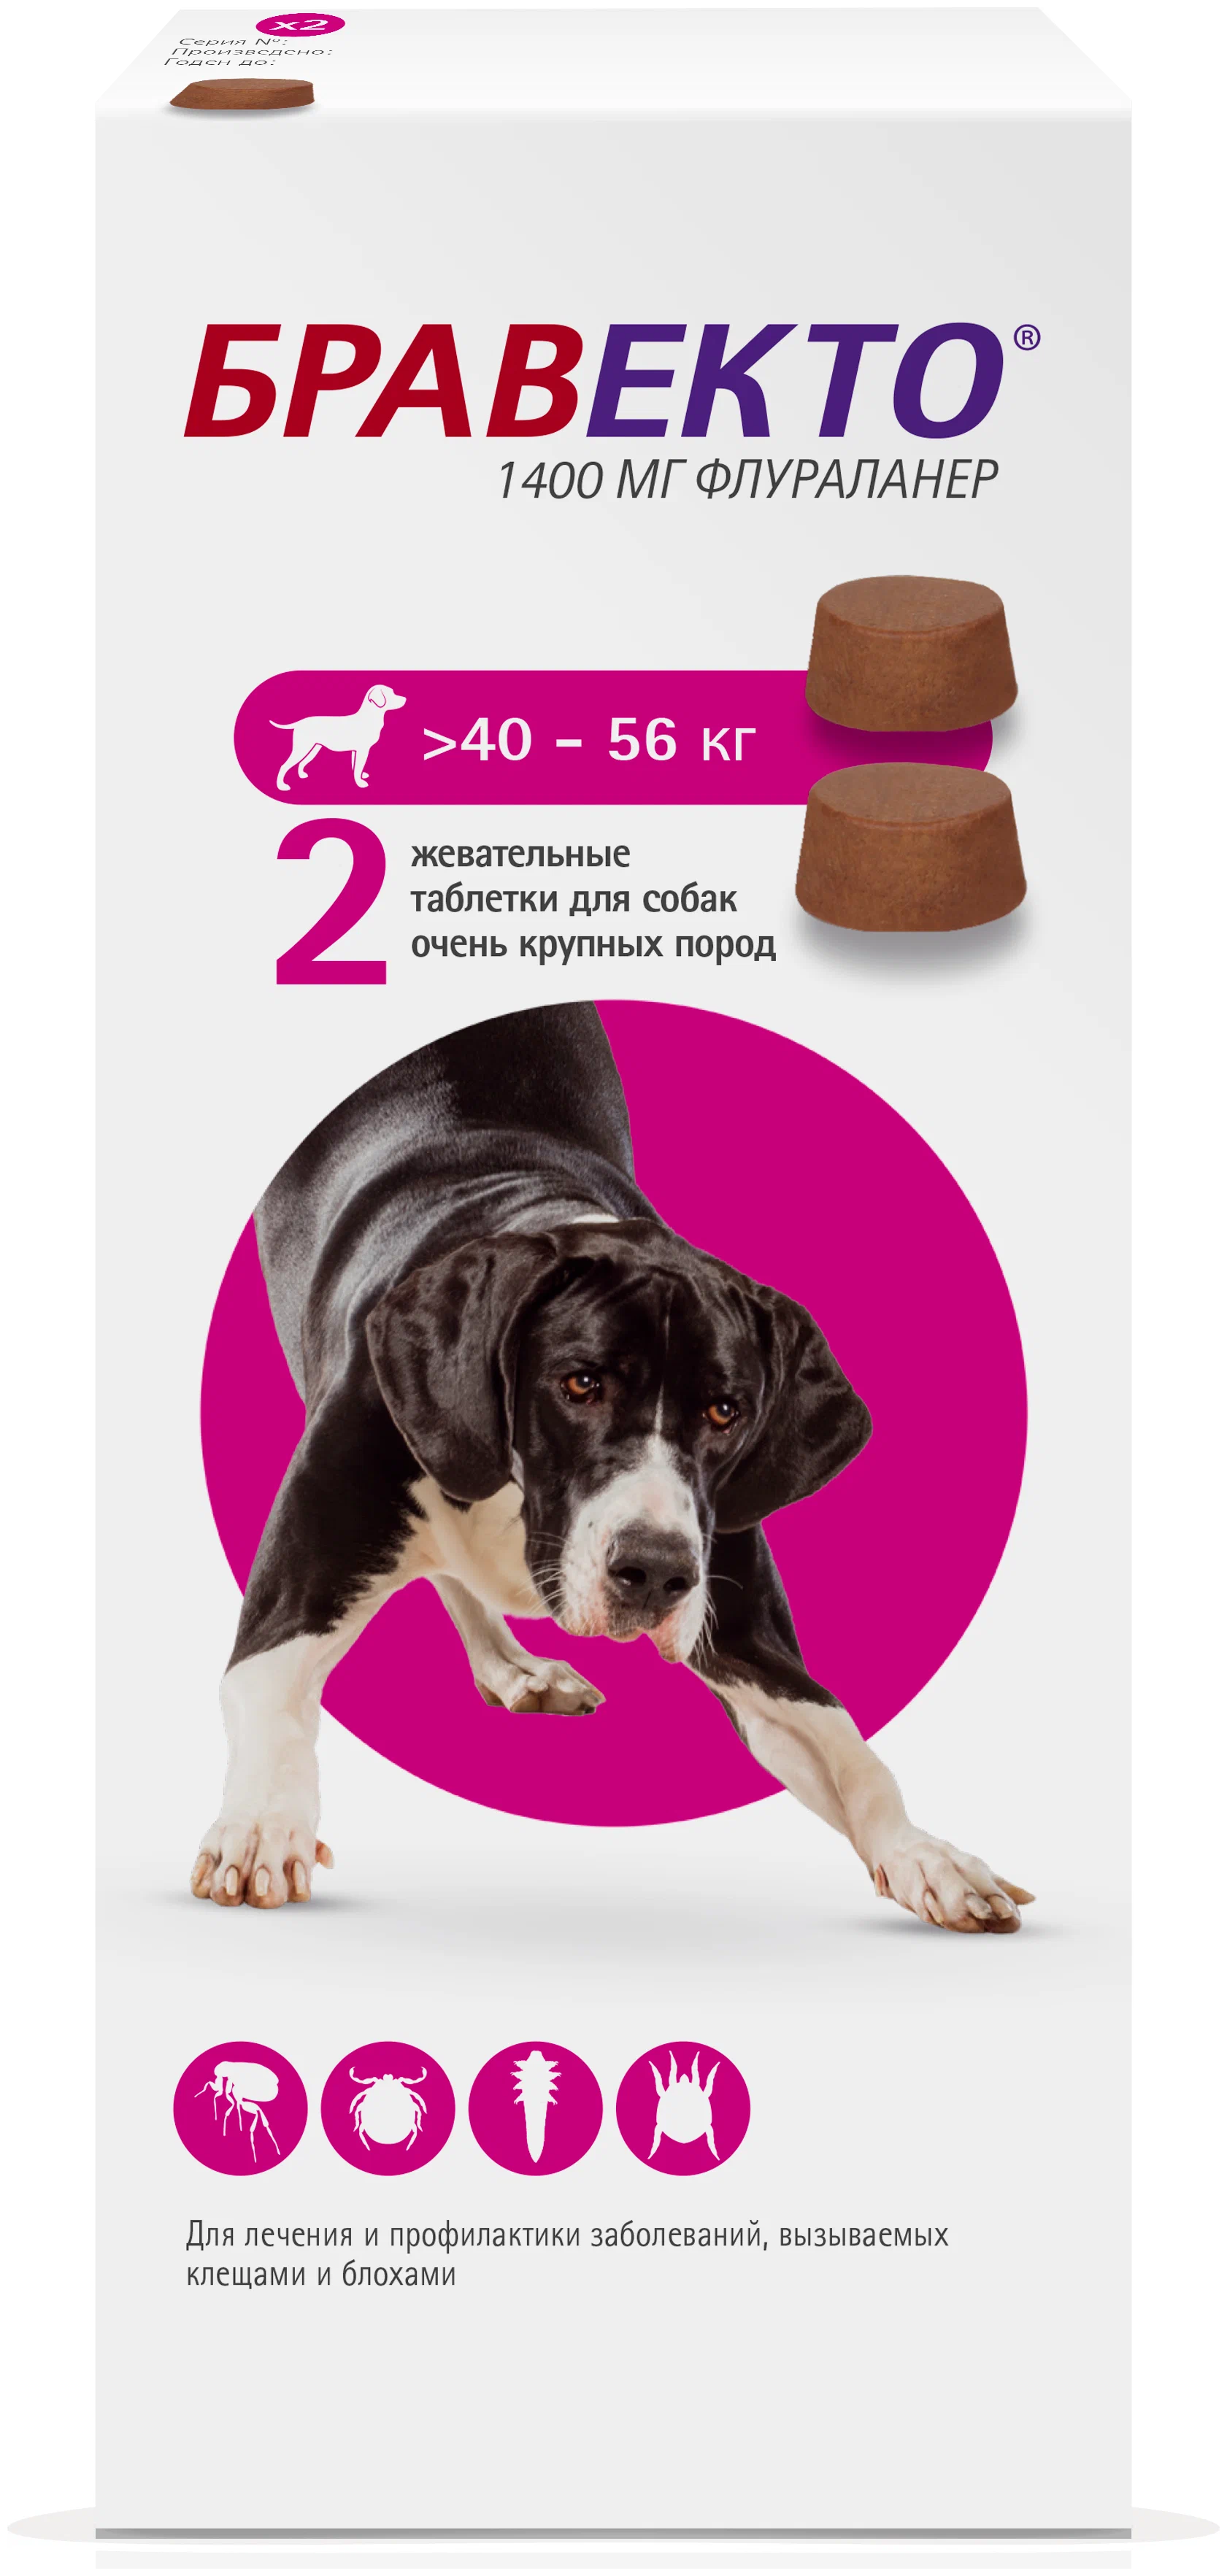 Бравекто для собак купить в калининграде. Бравекто 1400мг таблетка инсектоакарицидная д/собак 40-56кг. Бравекто таблетки для собак 40-56. Бравекто 1400 мг д/собак 40-56 кг. Бравекто для собак 40-56 2.